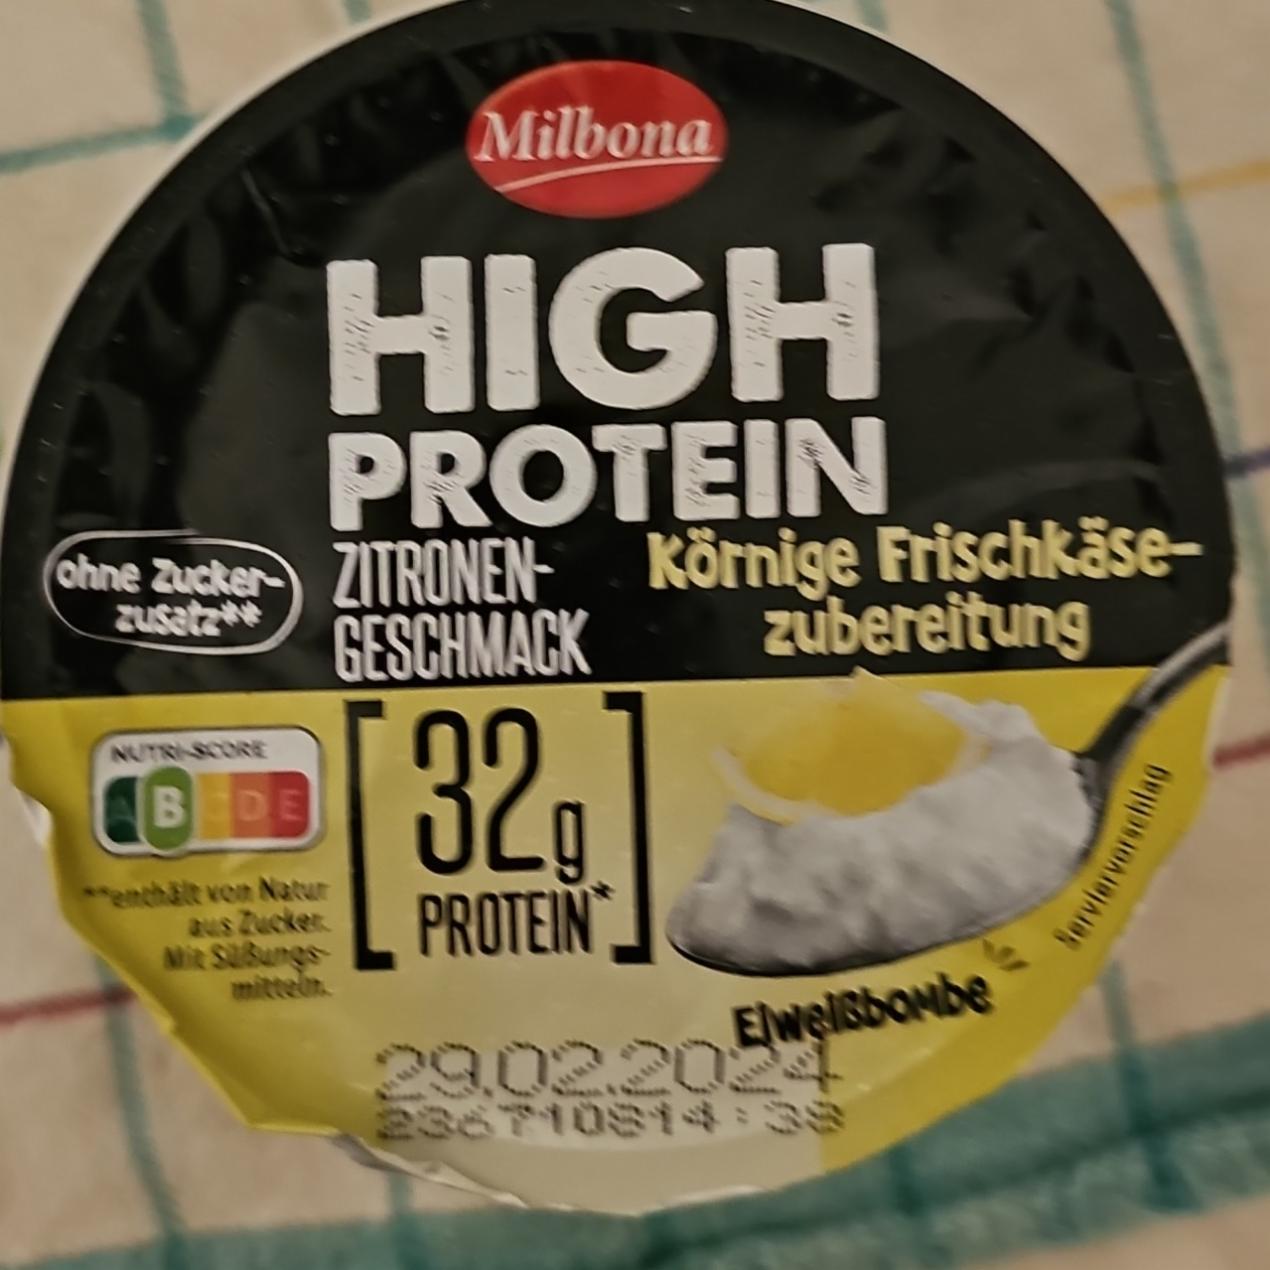 Fotografie - High Protein Zitronen-geschmack Milbona